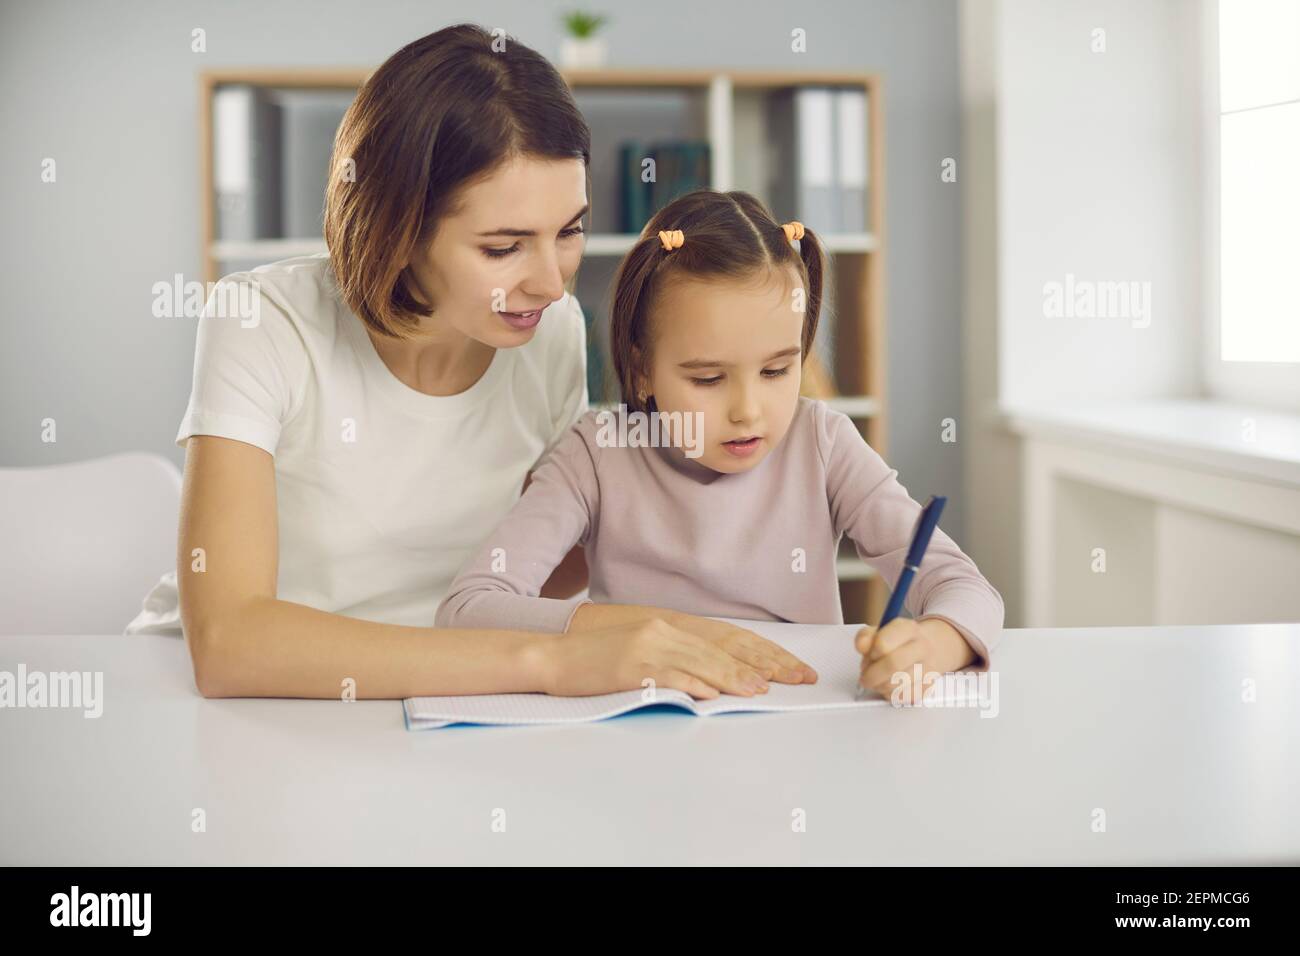 Kleine konzentrierte aufmerksame Mädchen sitzen mit Mutter oder Kindermädchen zusammen Im Zimmer und Zeichnung Stockfoto